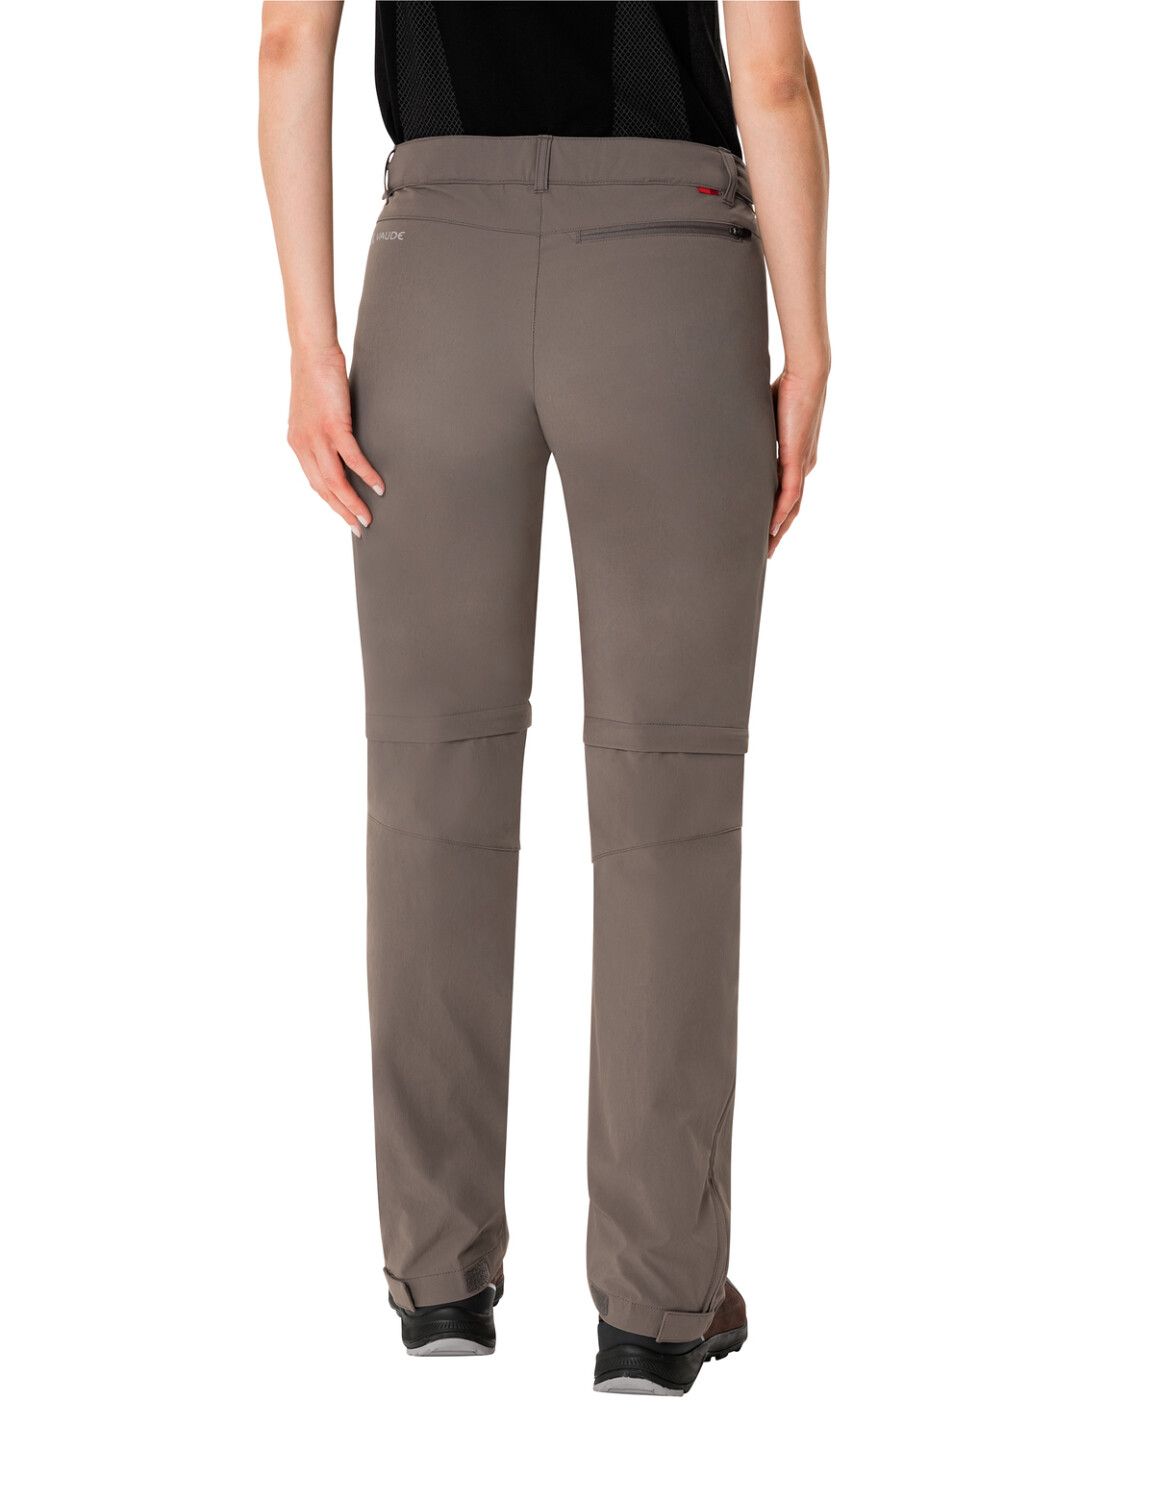 VAUDE Women's Farley Stretch ZO T-Zip Pants (Bild 49)